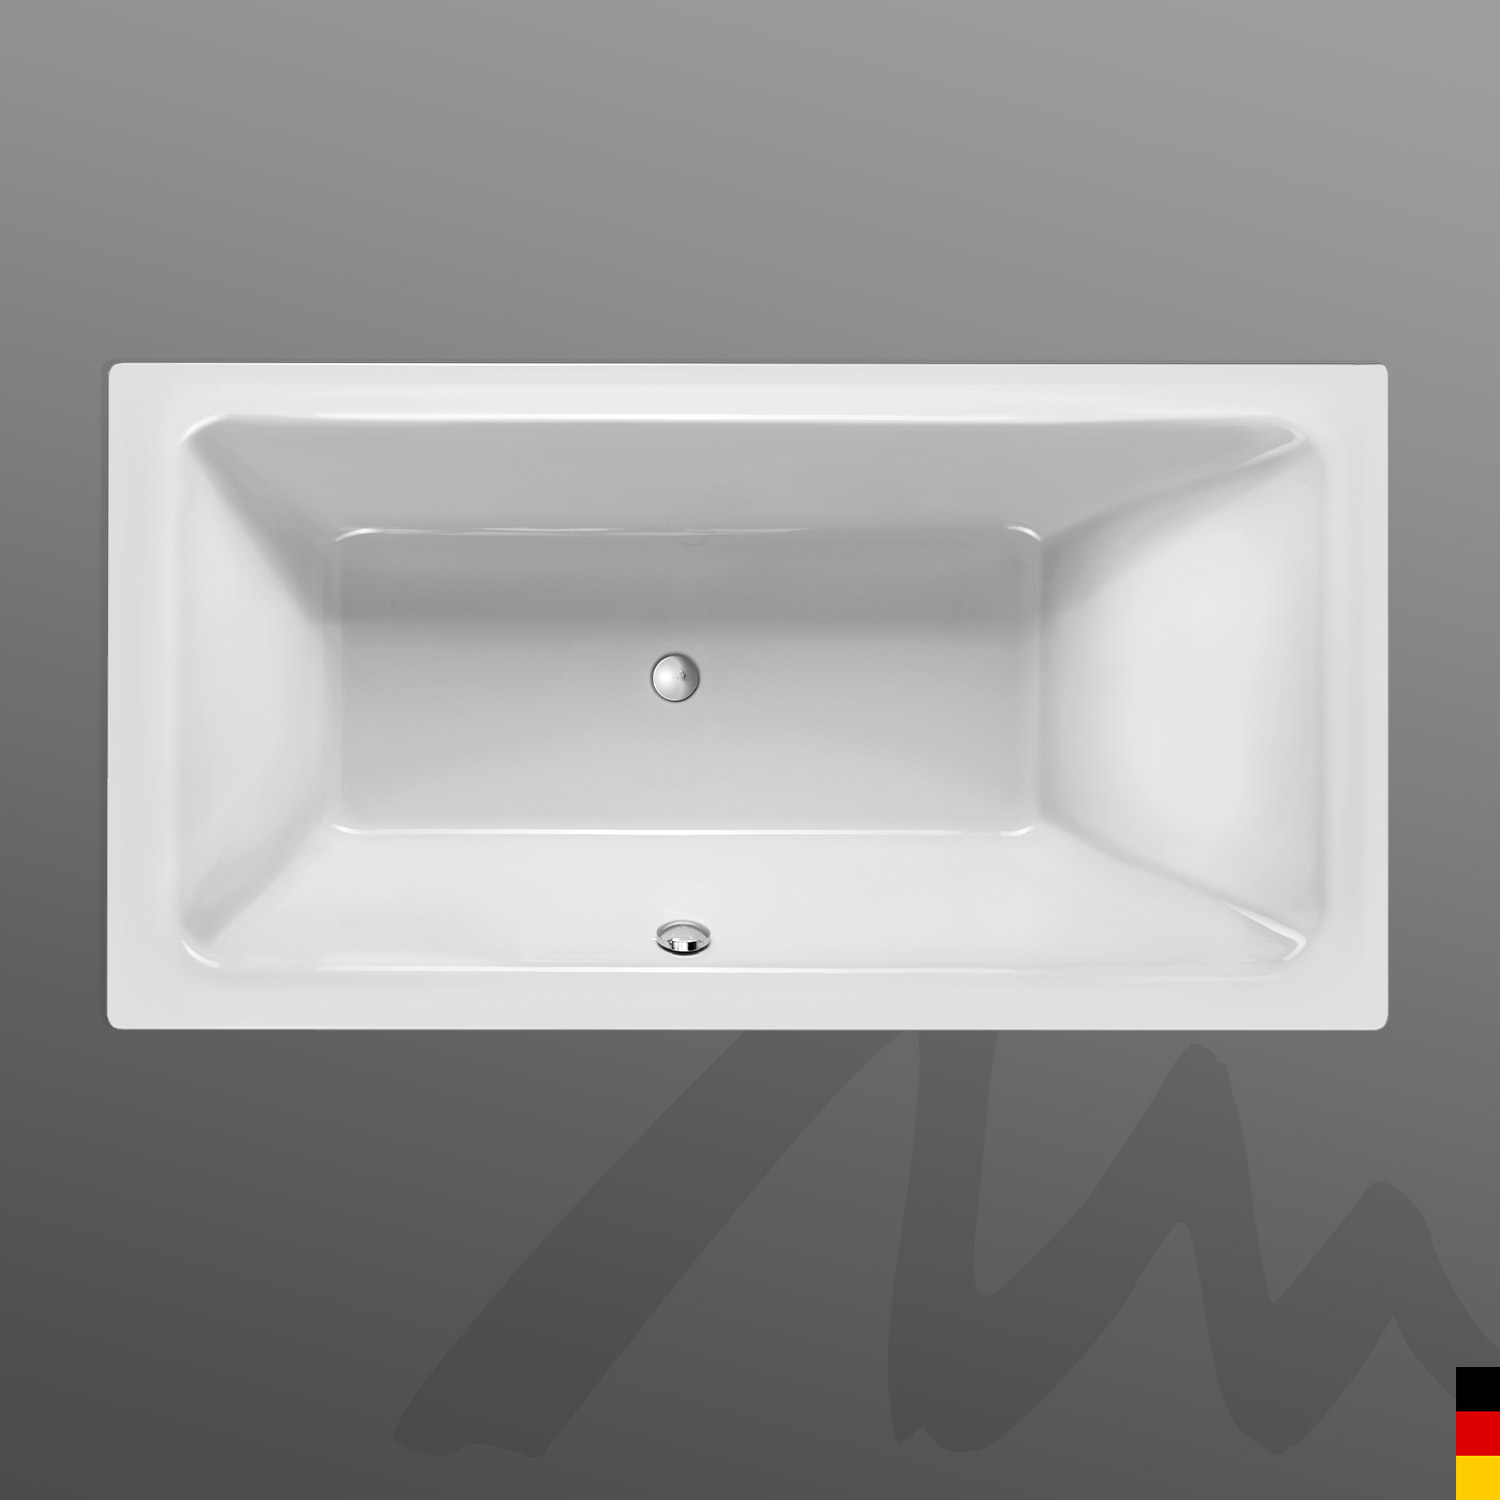 Mauersberger Badewanne Rechteck Convexa 190/100  190x100x45  Farbe:Farbgruppe 3